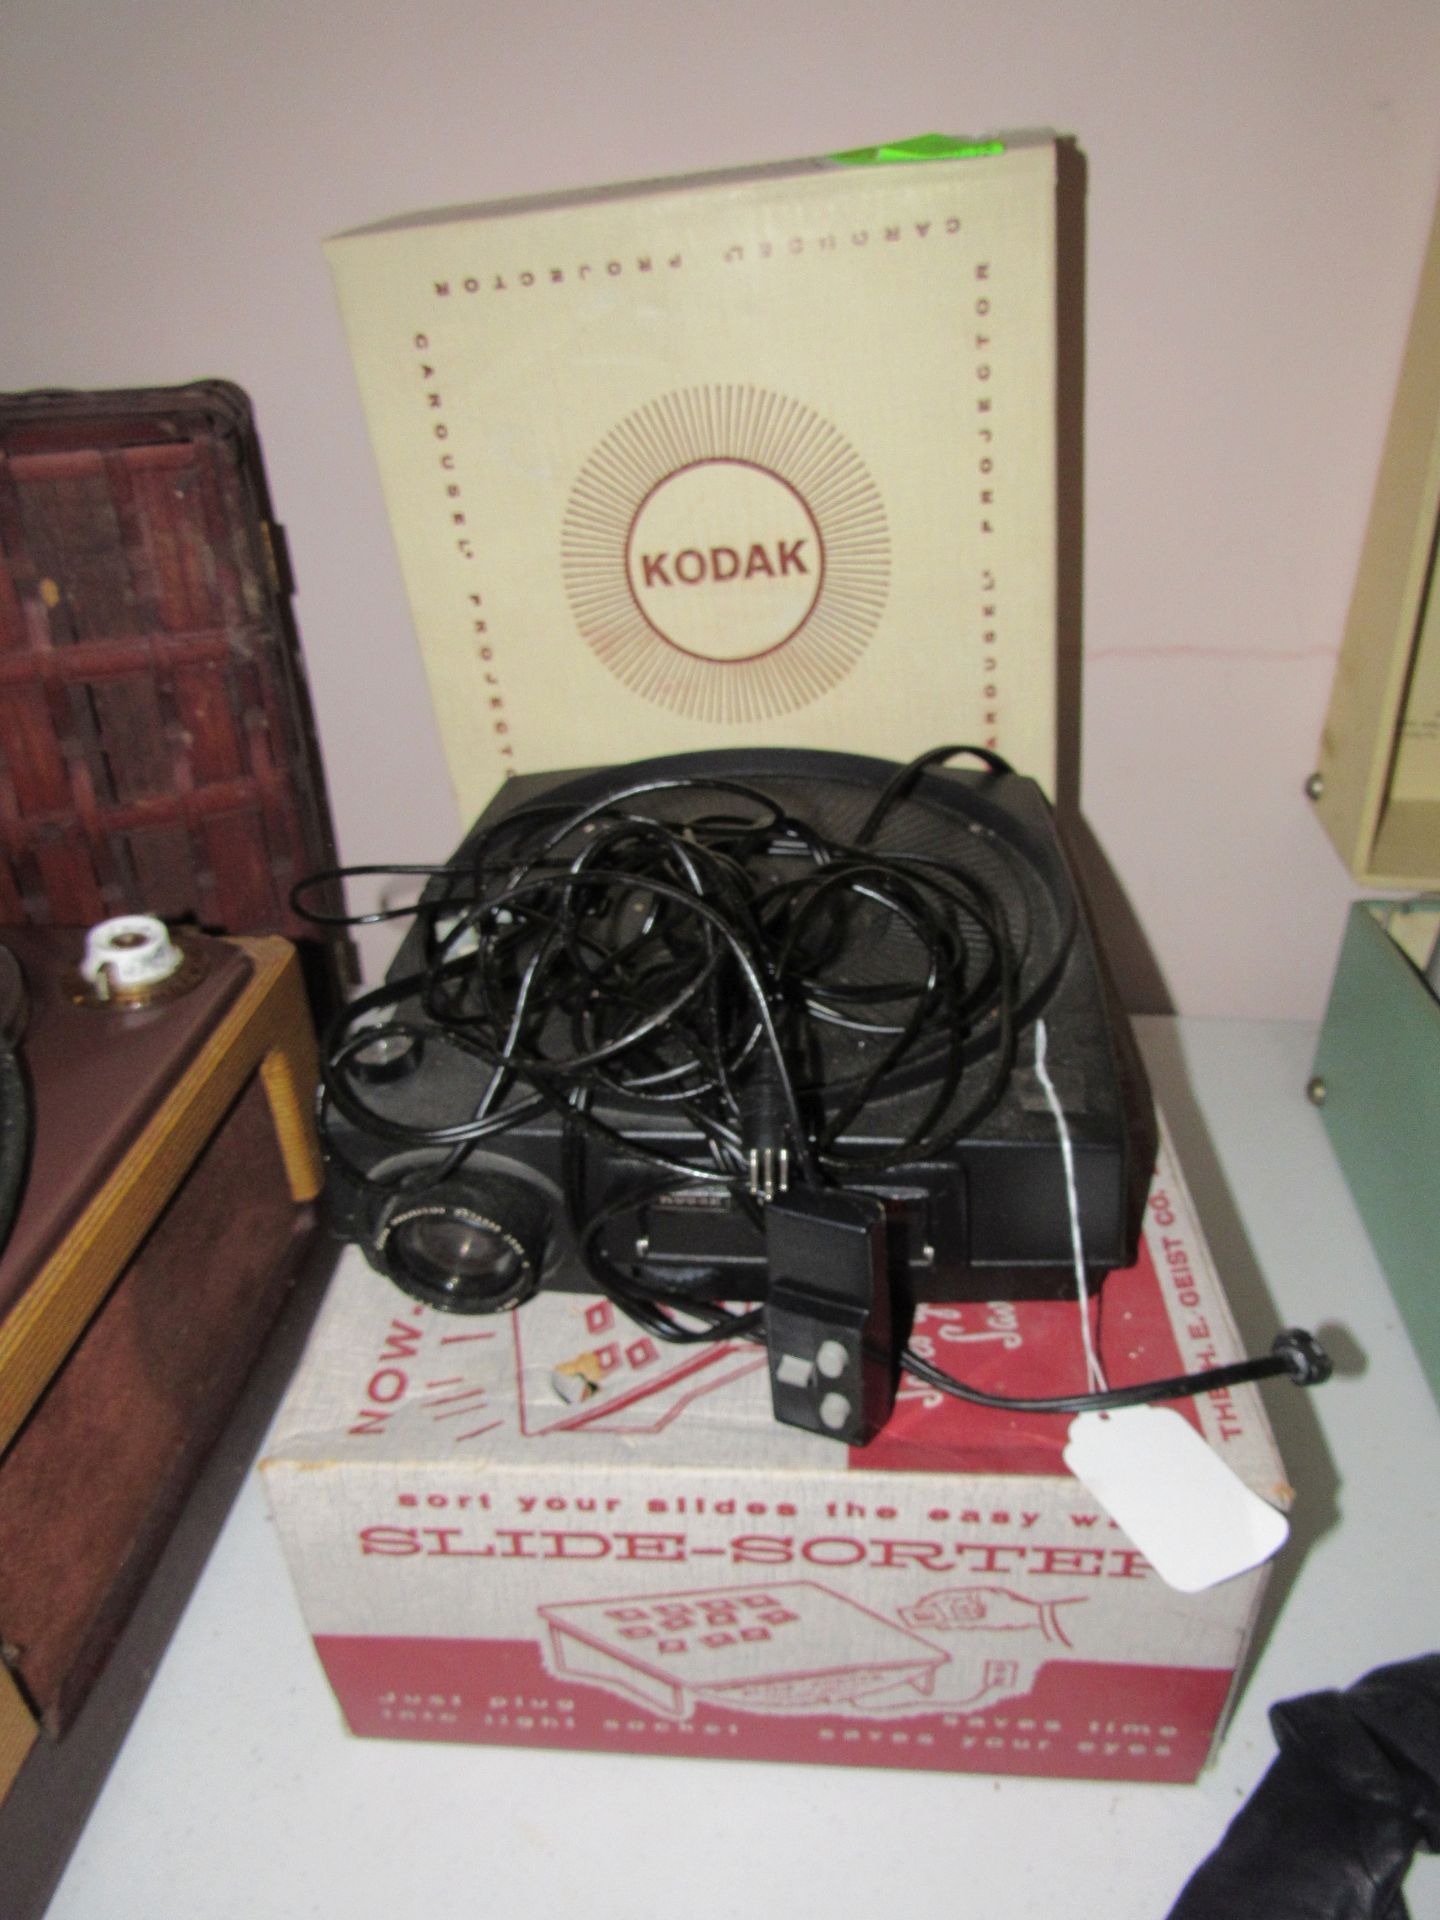 Kodak carousel projector in box, Kodak carousel projector and slide sorter